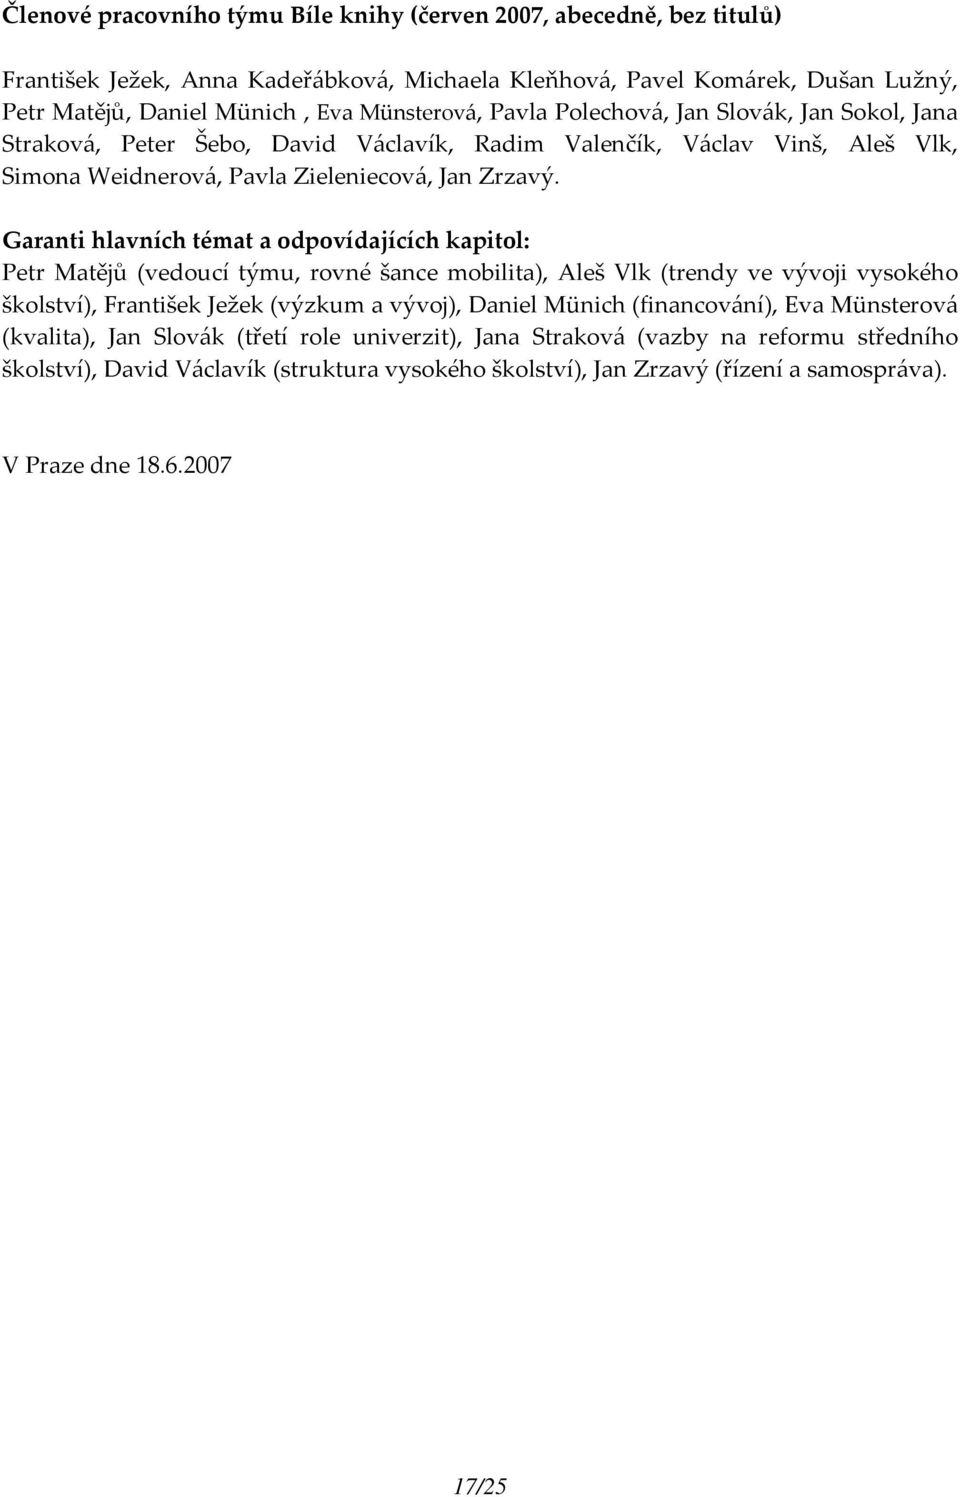 Garanti hlavních témat a odpovídajících kapitol: Petr Matějů (vedoucí týmu, rovné šance mobilita), Aleš Vlk (trendy ve vývoji vysokého školství), František Ježek (výzkum a vývoj), Daniel Münich